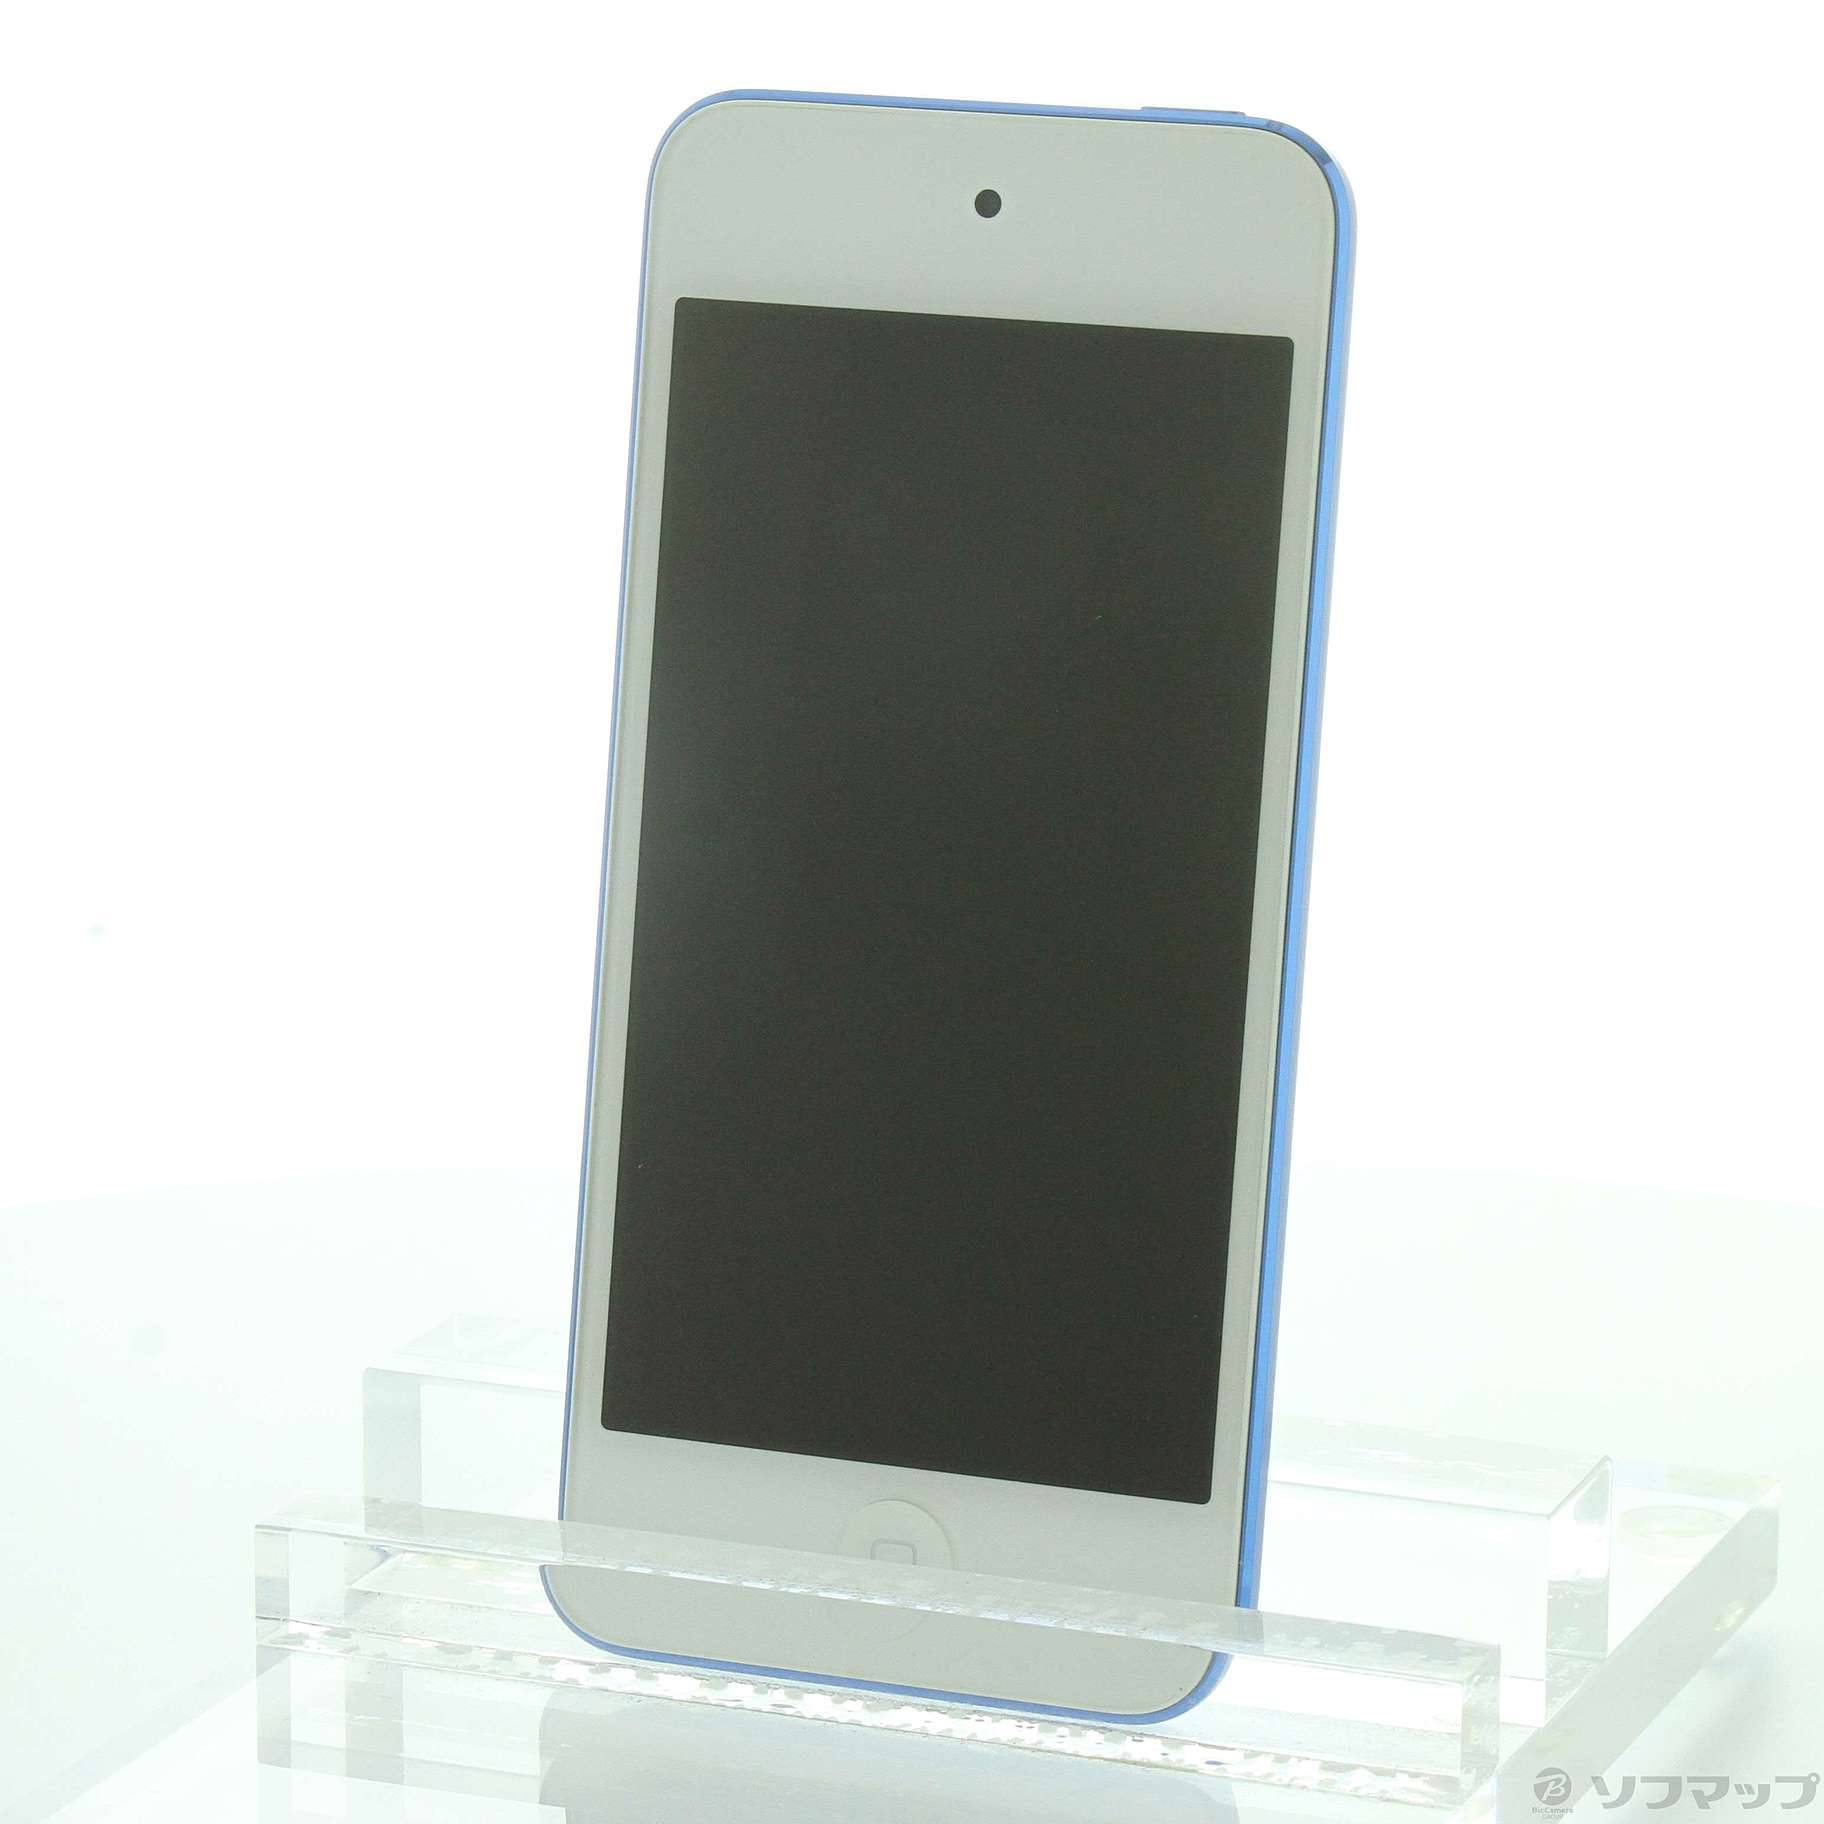 【美品】Apple iPod touch (32GB) - ブルー 第7世代